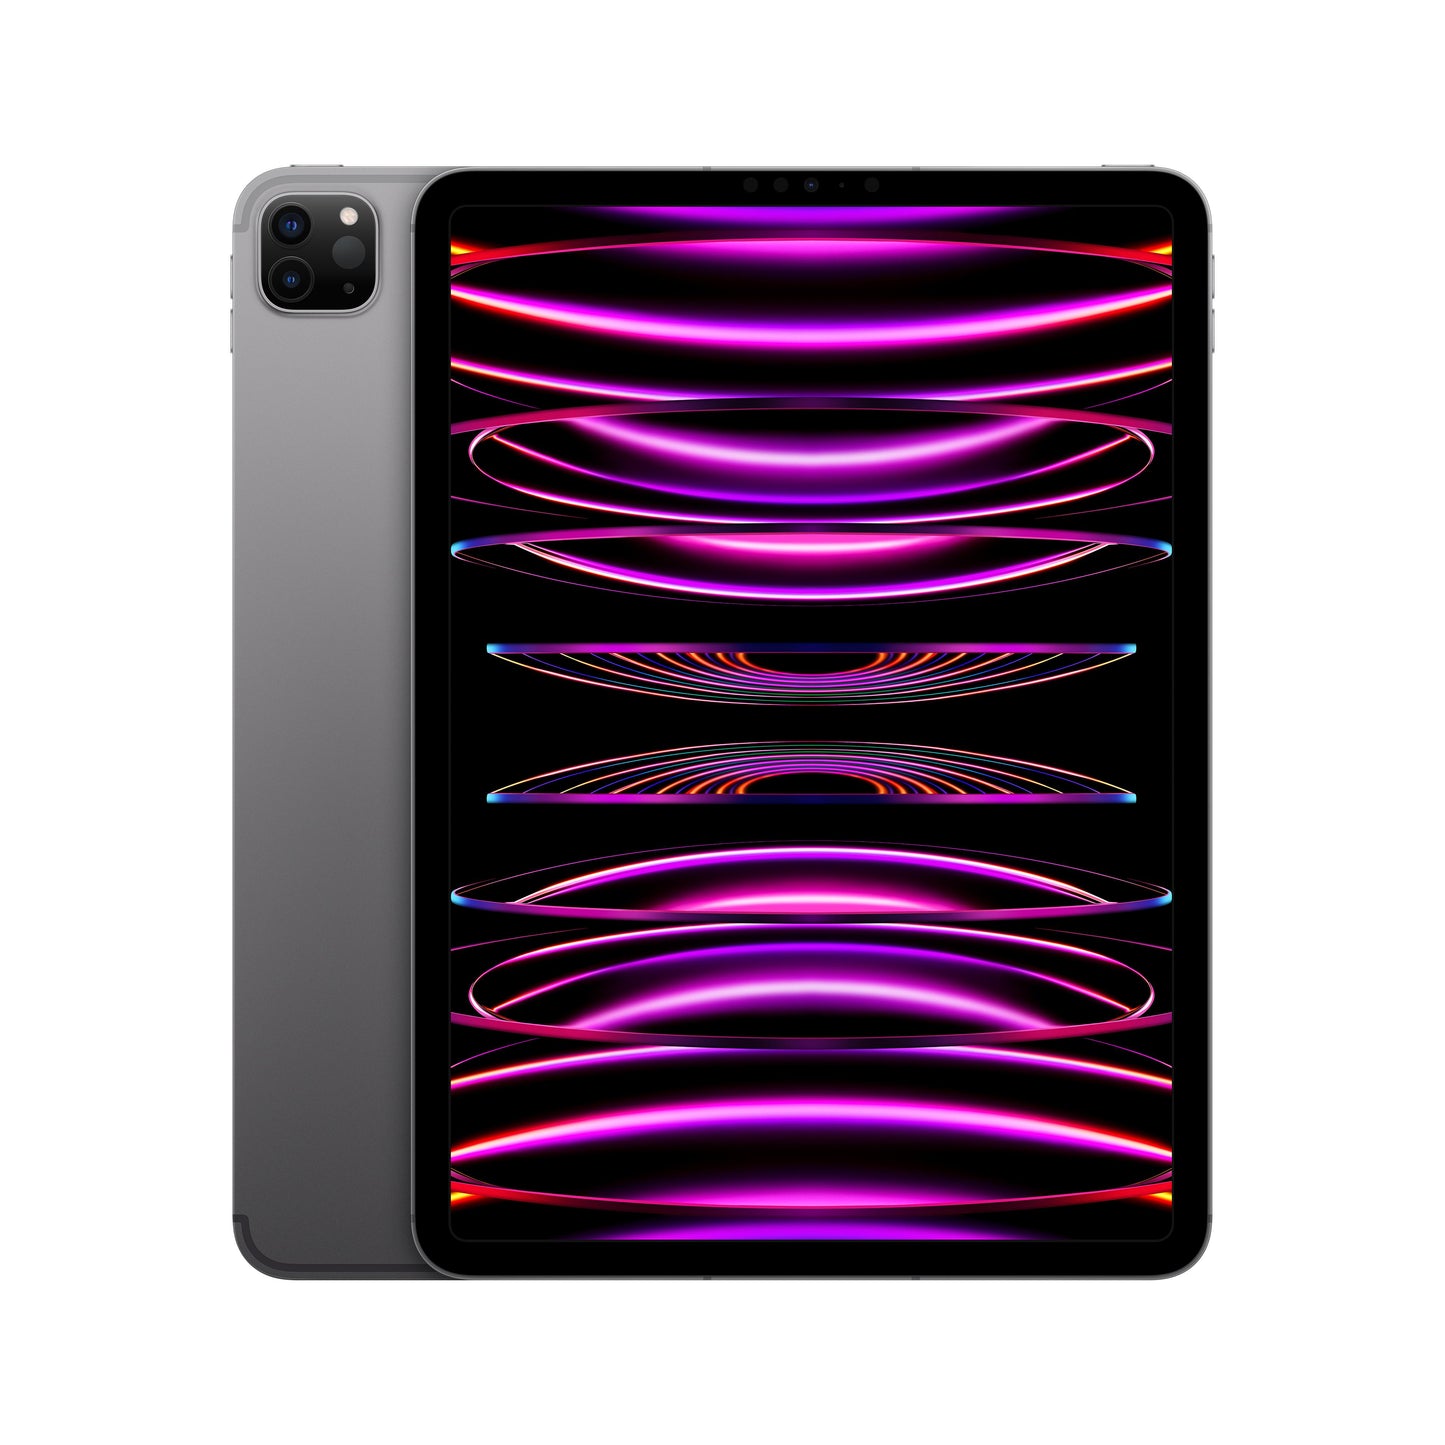 2022 11-inch iPad Pro Wi-Fi + Cellular 1TB - Space Grey (4th generation)